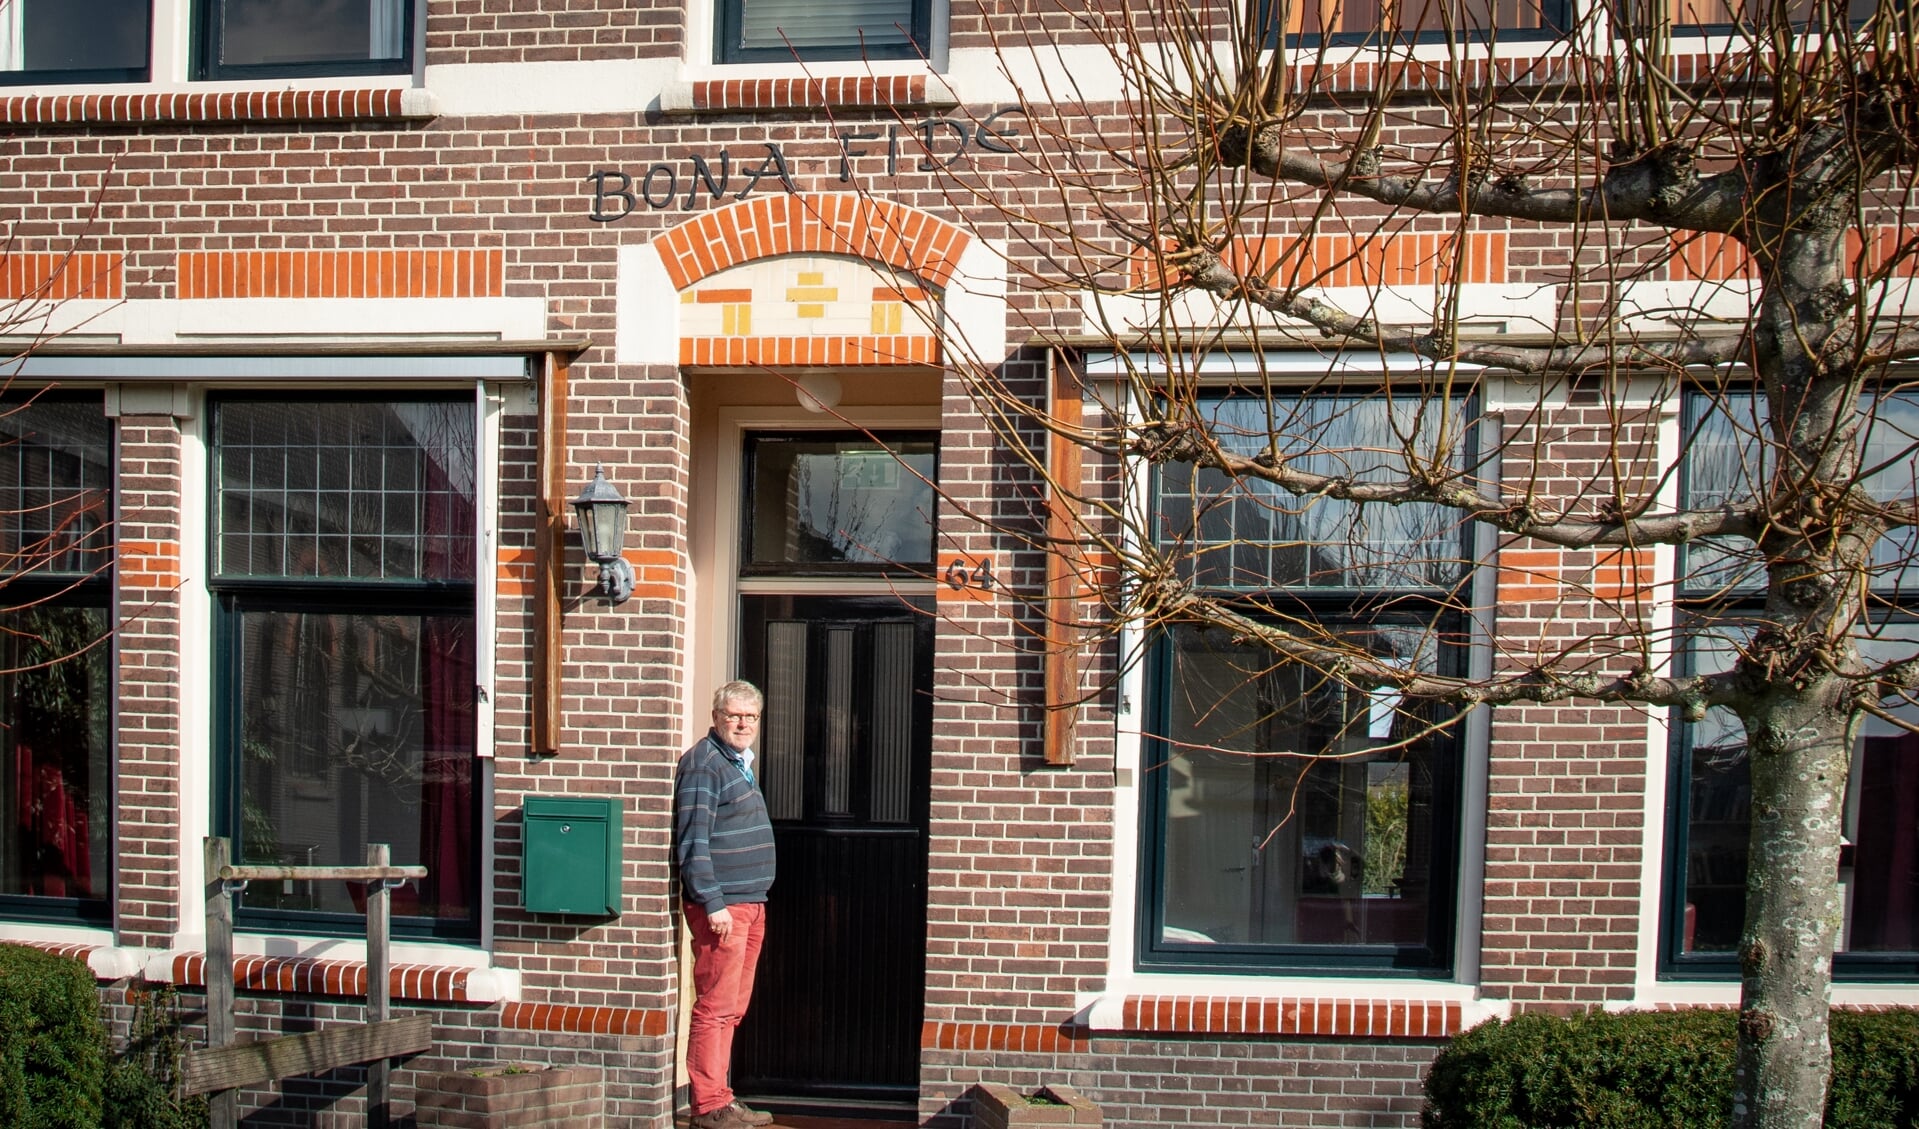 Op veel plekken komen Parentshouses. Onlangs werd er een geopend in Nijkerkerveen.